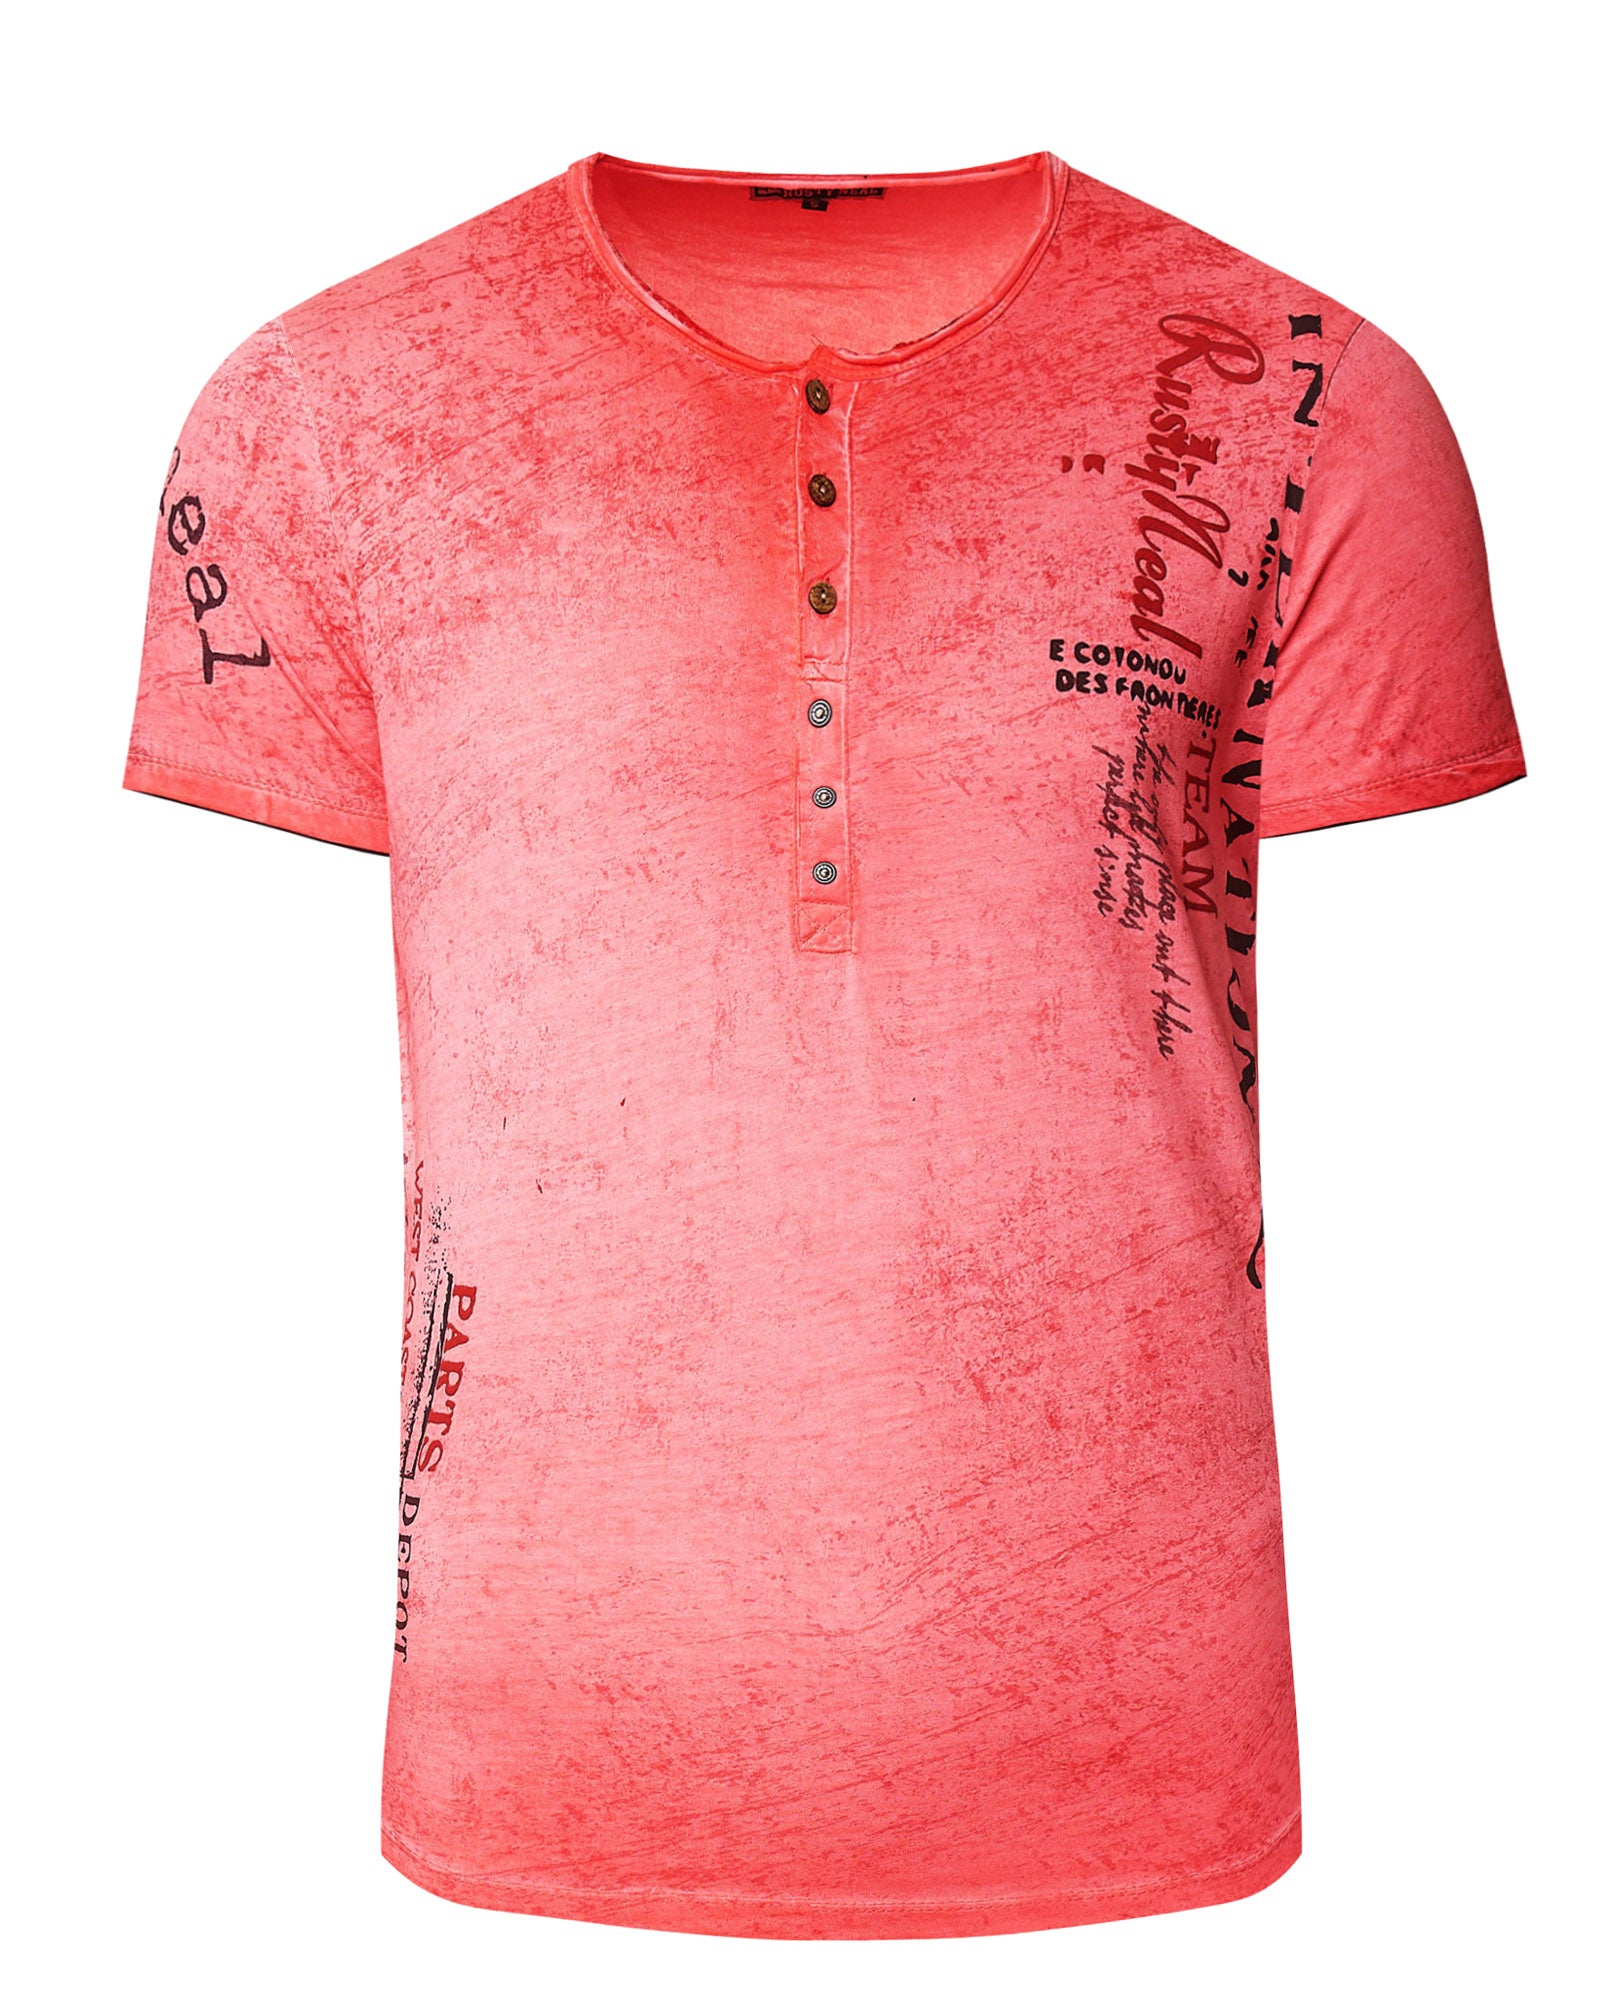 Parts t-shirt - Pink